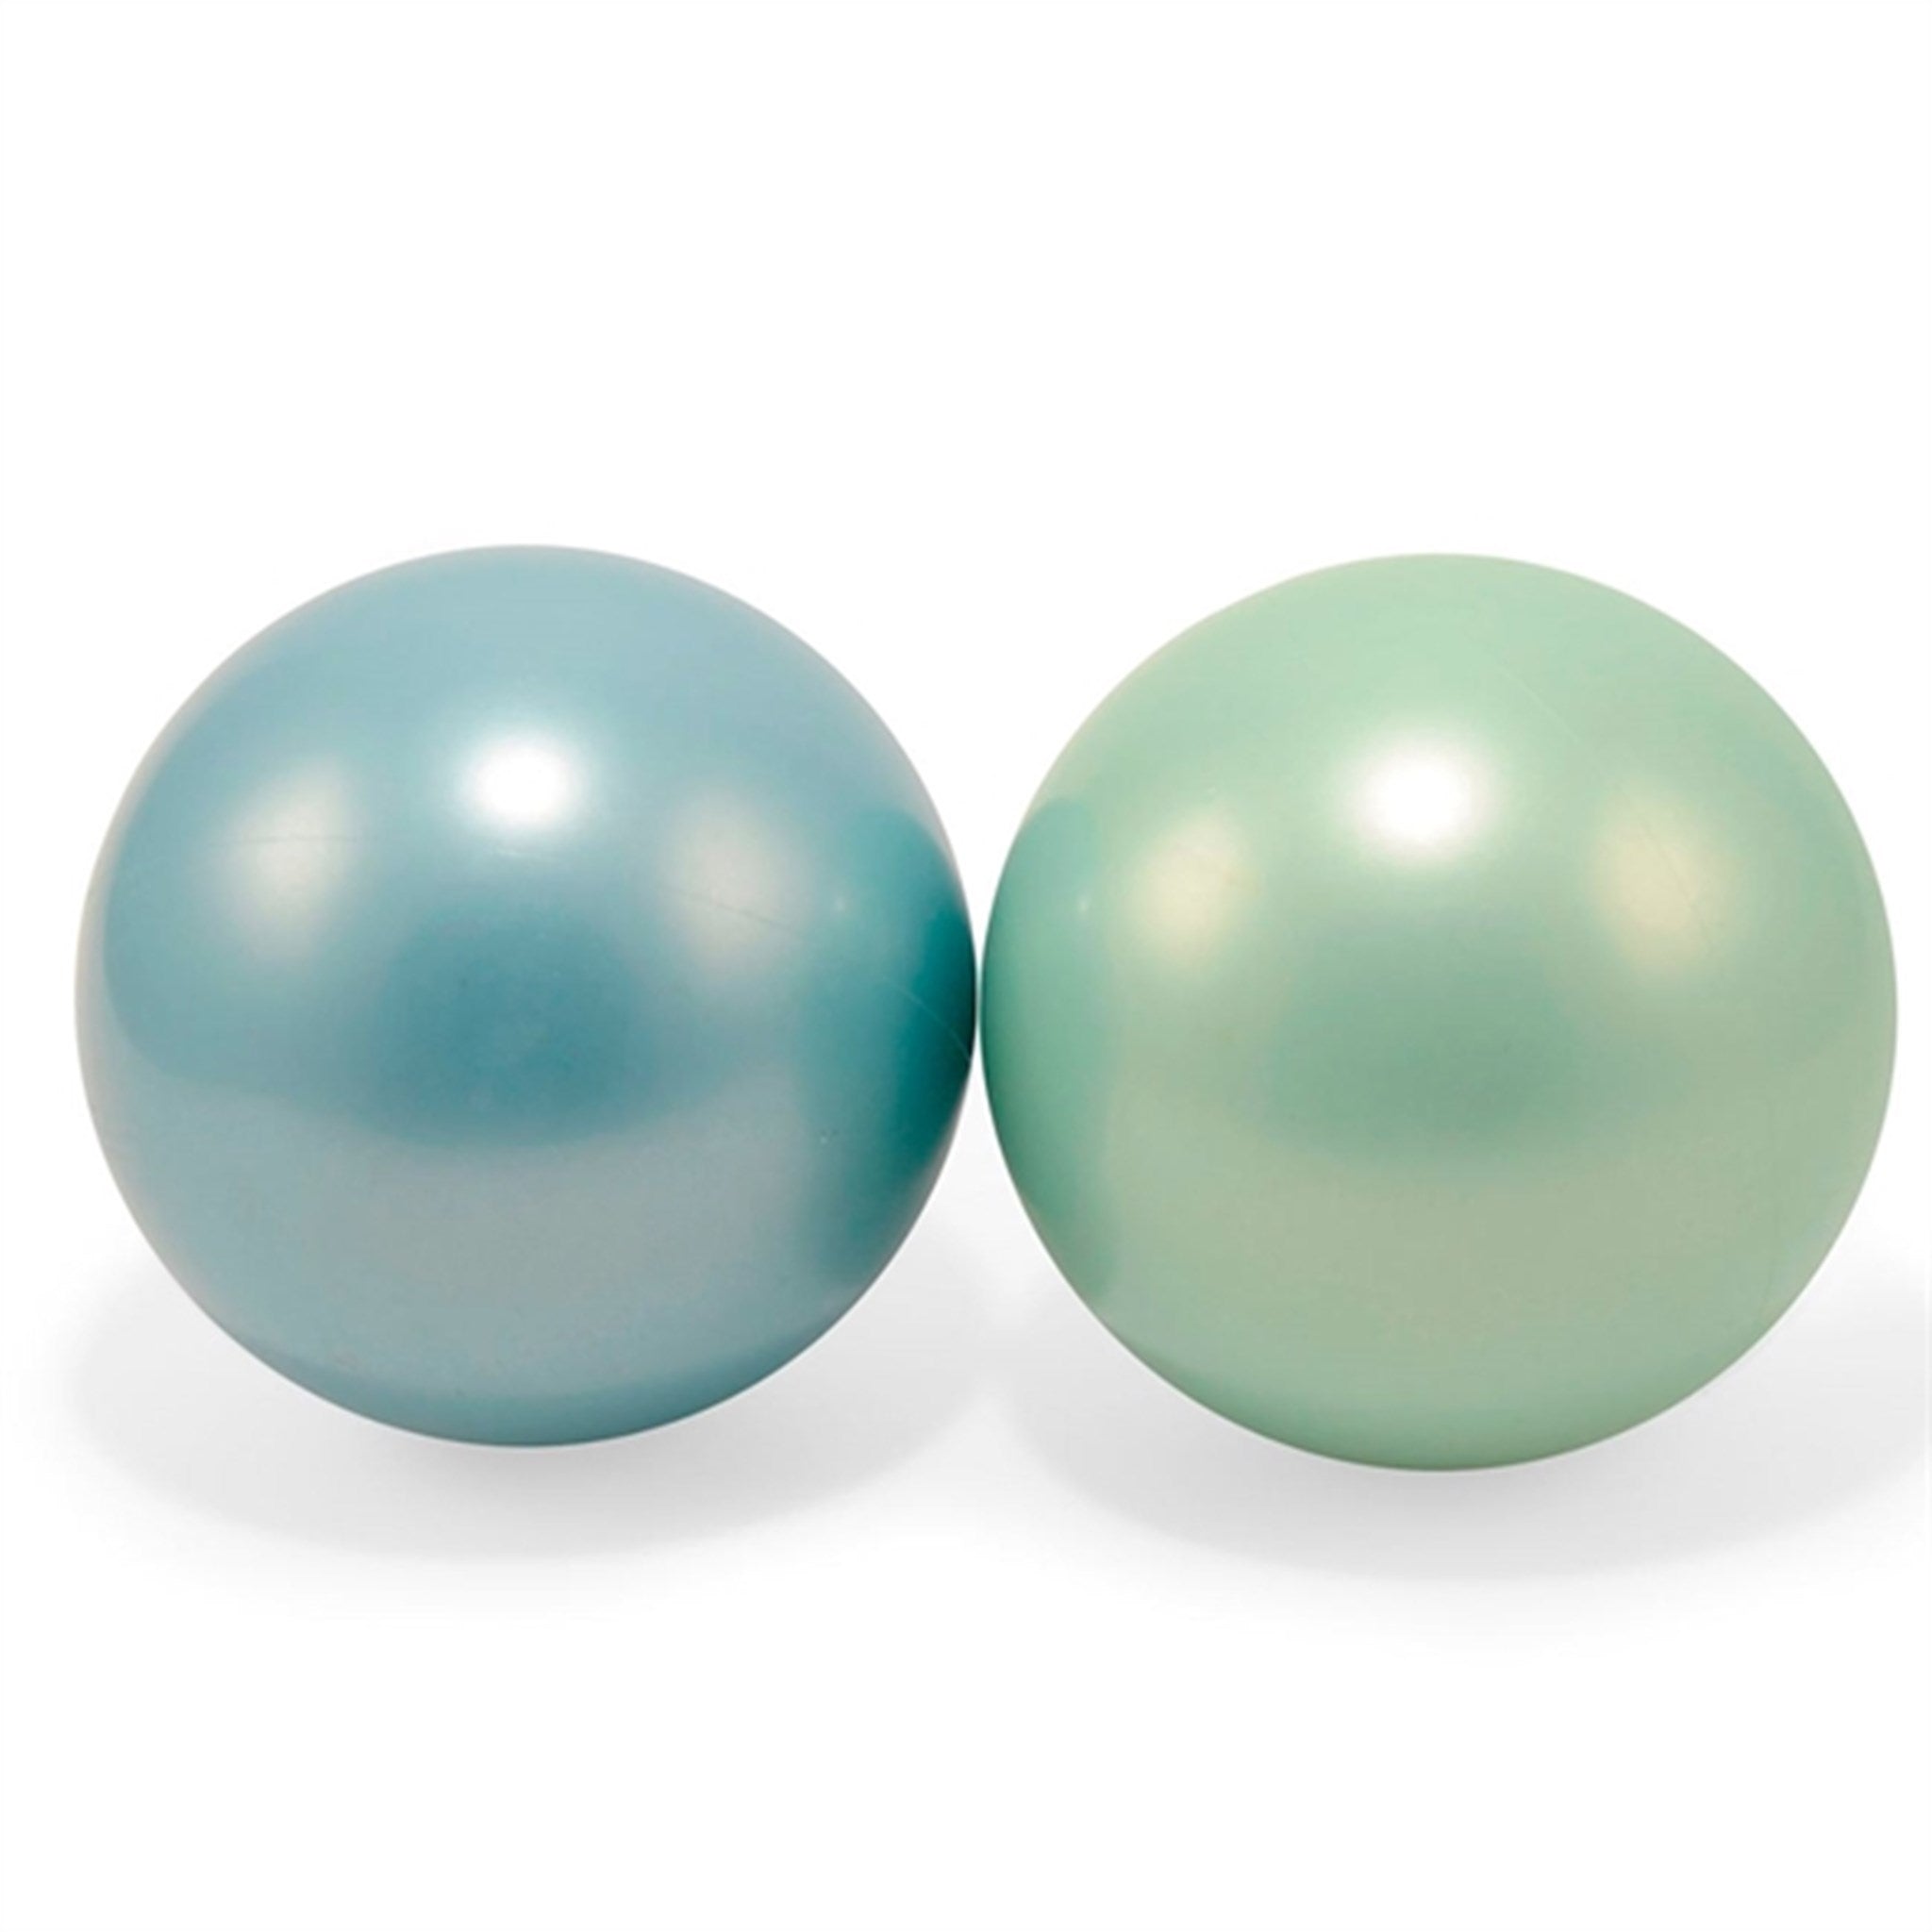 Magni Balls Blue/Green